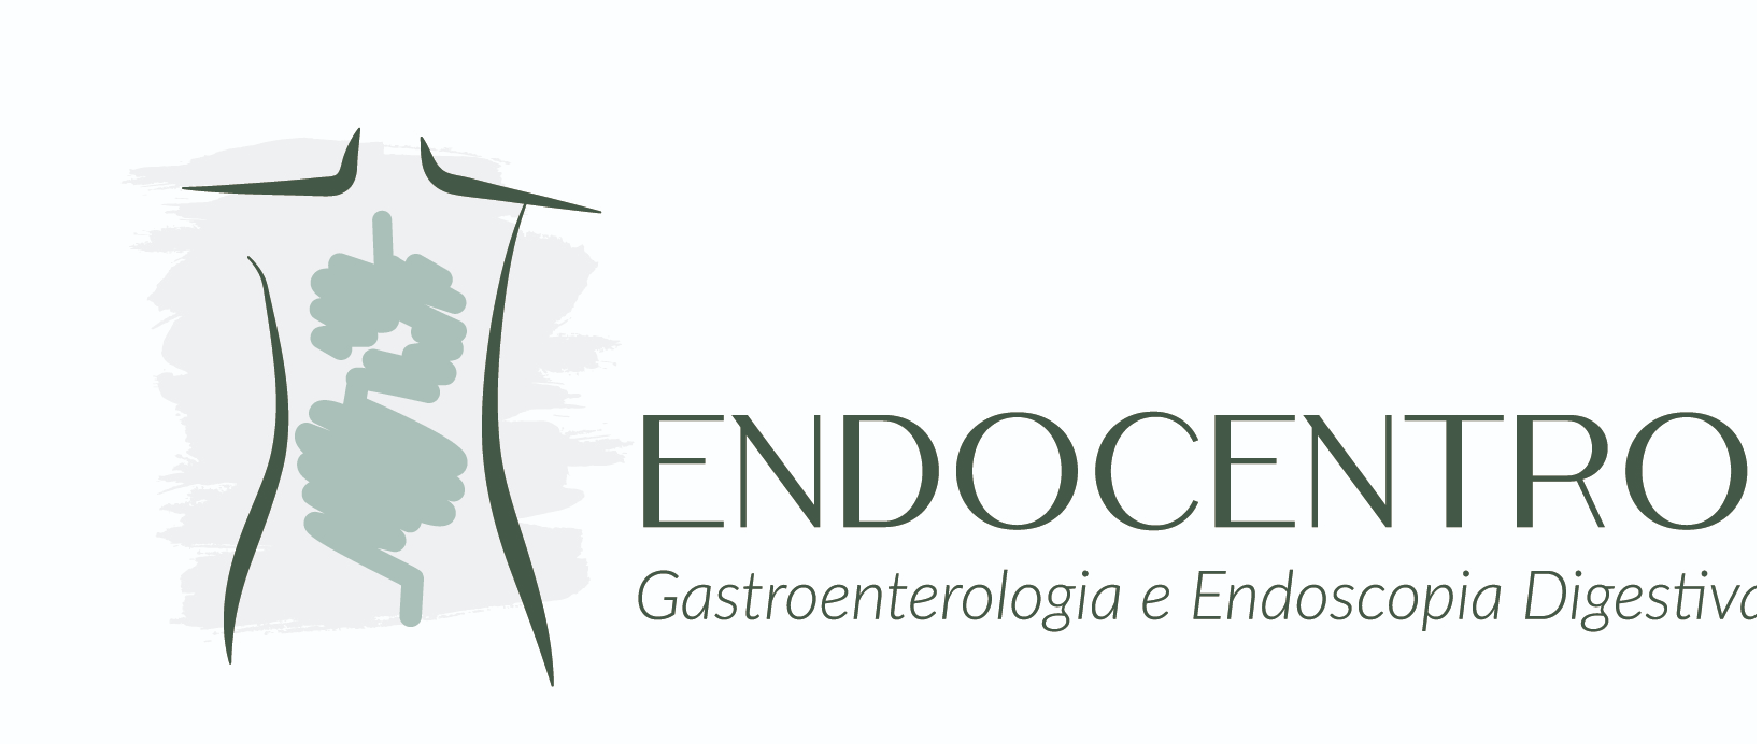 ENDOCENTRO - Gastroenterologia e Endoscopia Digestiva - Clínica Endocentro